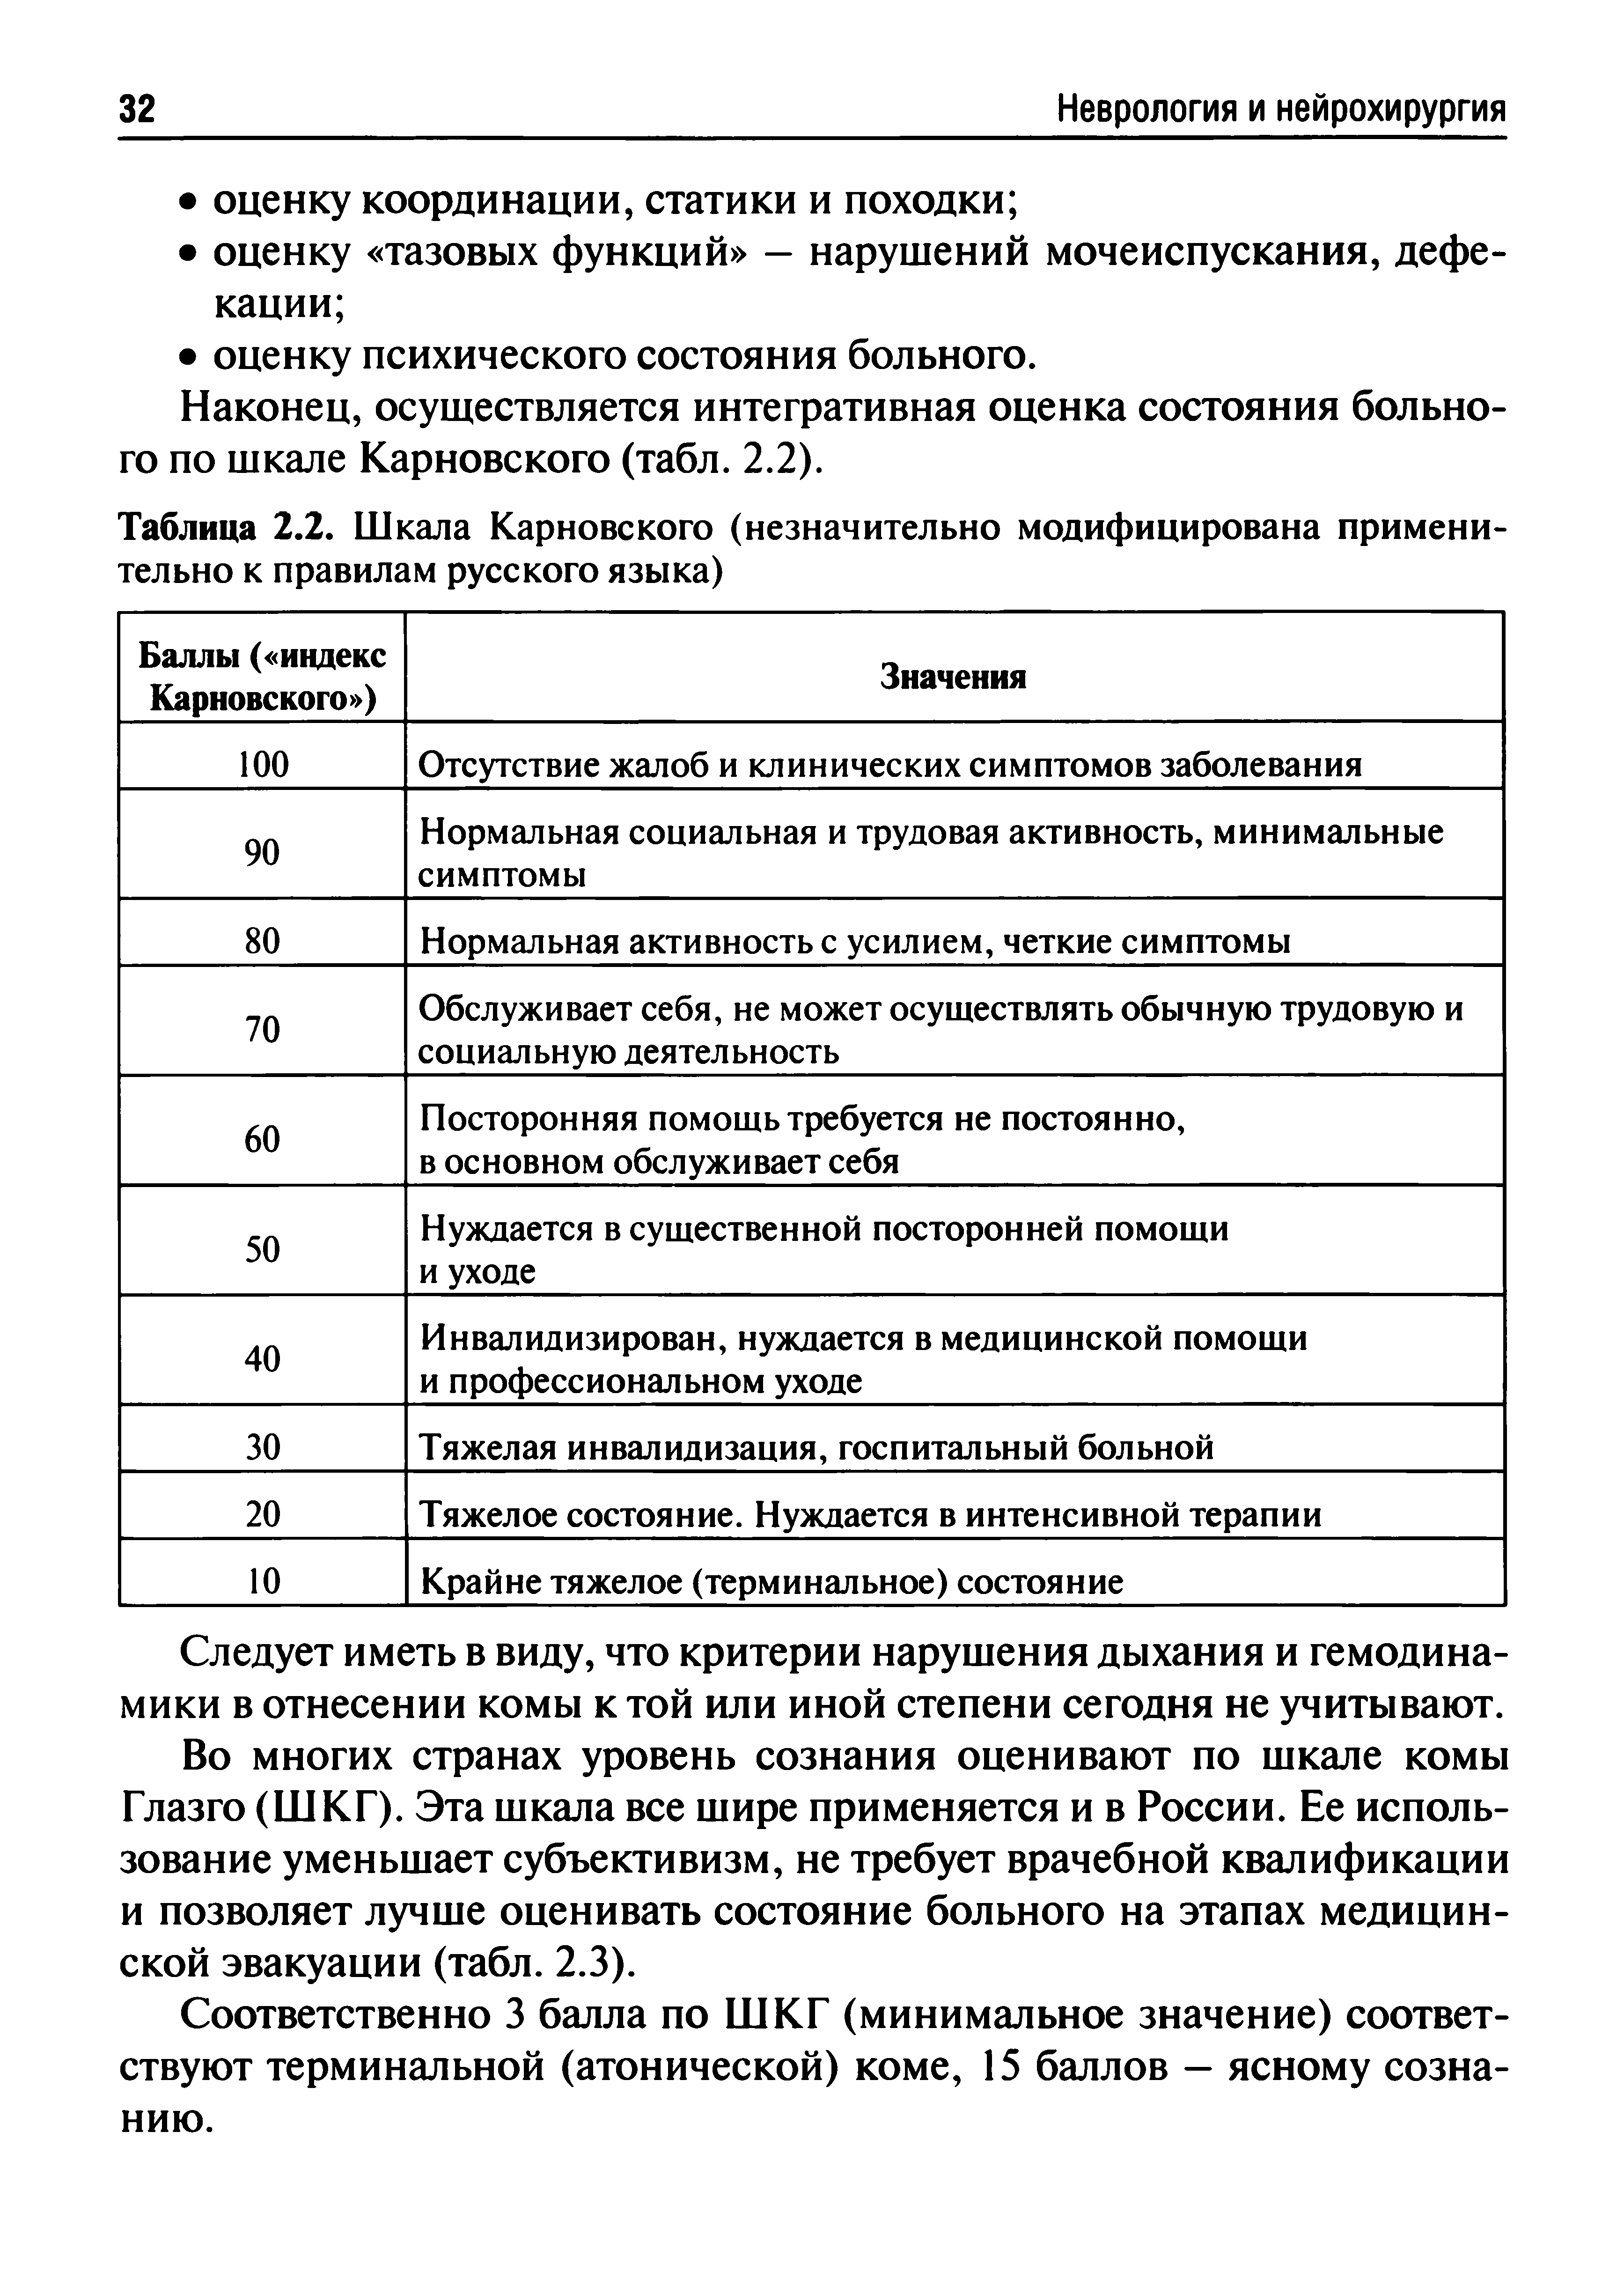 Таблица 2.2. Шкала Карновского (незначительно модифицирована применительно к правилам русского языка)...